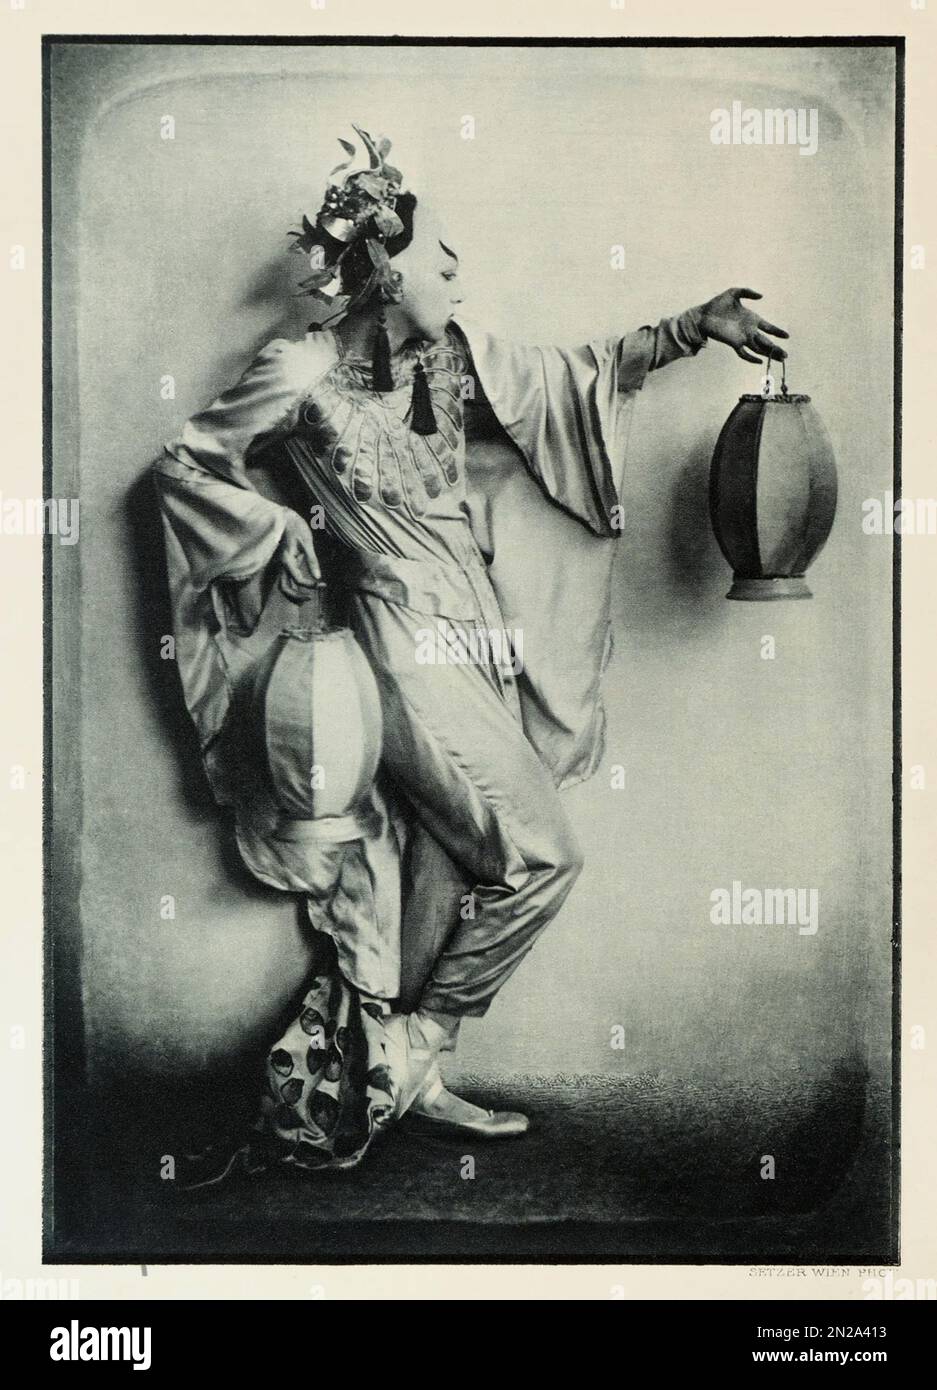 1922 Ca , Wien , ÖSTERREICH : die deutsche Tänzerin LO HESSE ( 1889 - 1983 Ca ) in der Rolle von TSCHAIKIUN . Foto: Franz Xavier SETZER ( 1886 - 1939 ) .- TANZ - DANZA - Ballerina - avanguardia - avantgarde - BALLETTO - TEATRO - AVANGUARDIA - Theater - moderno - MODERNISMO - MODERNISMUS - Kostüm di scena - Bühnenkostüm - ORIENTALE - ORIENTALISTA - ORIENTALIST - EXOTIC - ESOTICO - EXOTISMUS - ESOTISMO - MYSTERY ENIGMA - ENIGMATICO - ENIGMATICA - GESCHICHTE - FOTOSTORICHE - REPUBBLICA DI WEIMAR - KABARETT - CAMP IDOL - ANNI FOLLI - ANNI VENTI - JAZZ AGE - 1920ER - '20 - 20ER - GIAPPONESIS Stockfoto